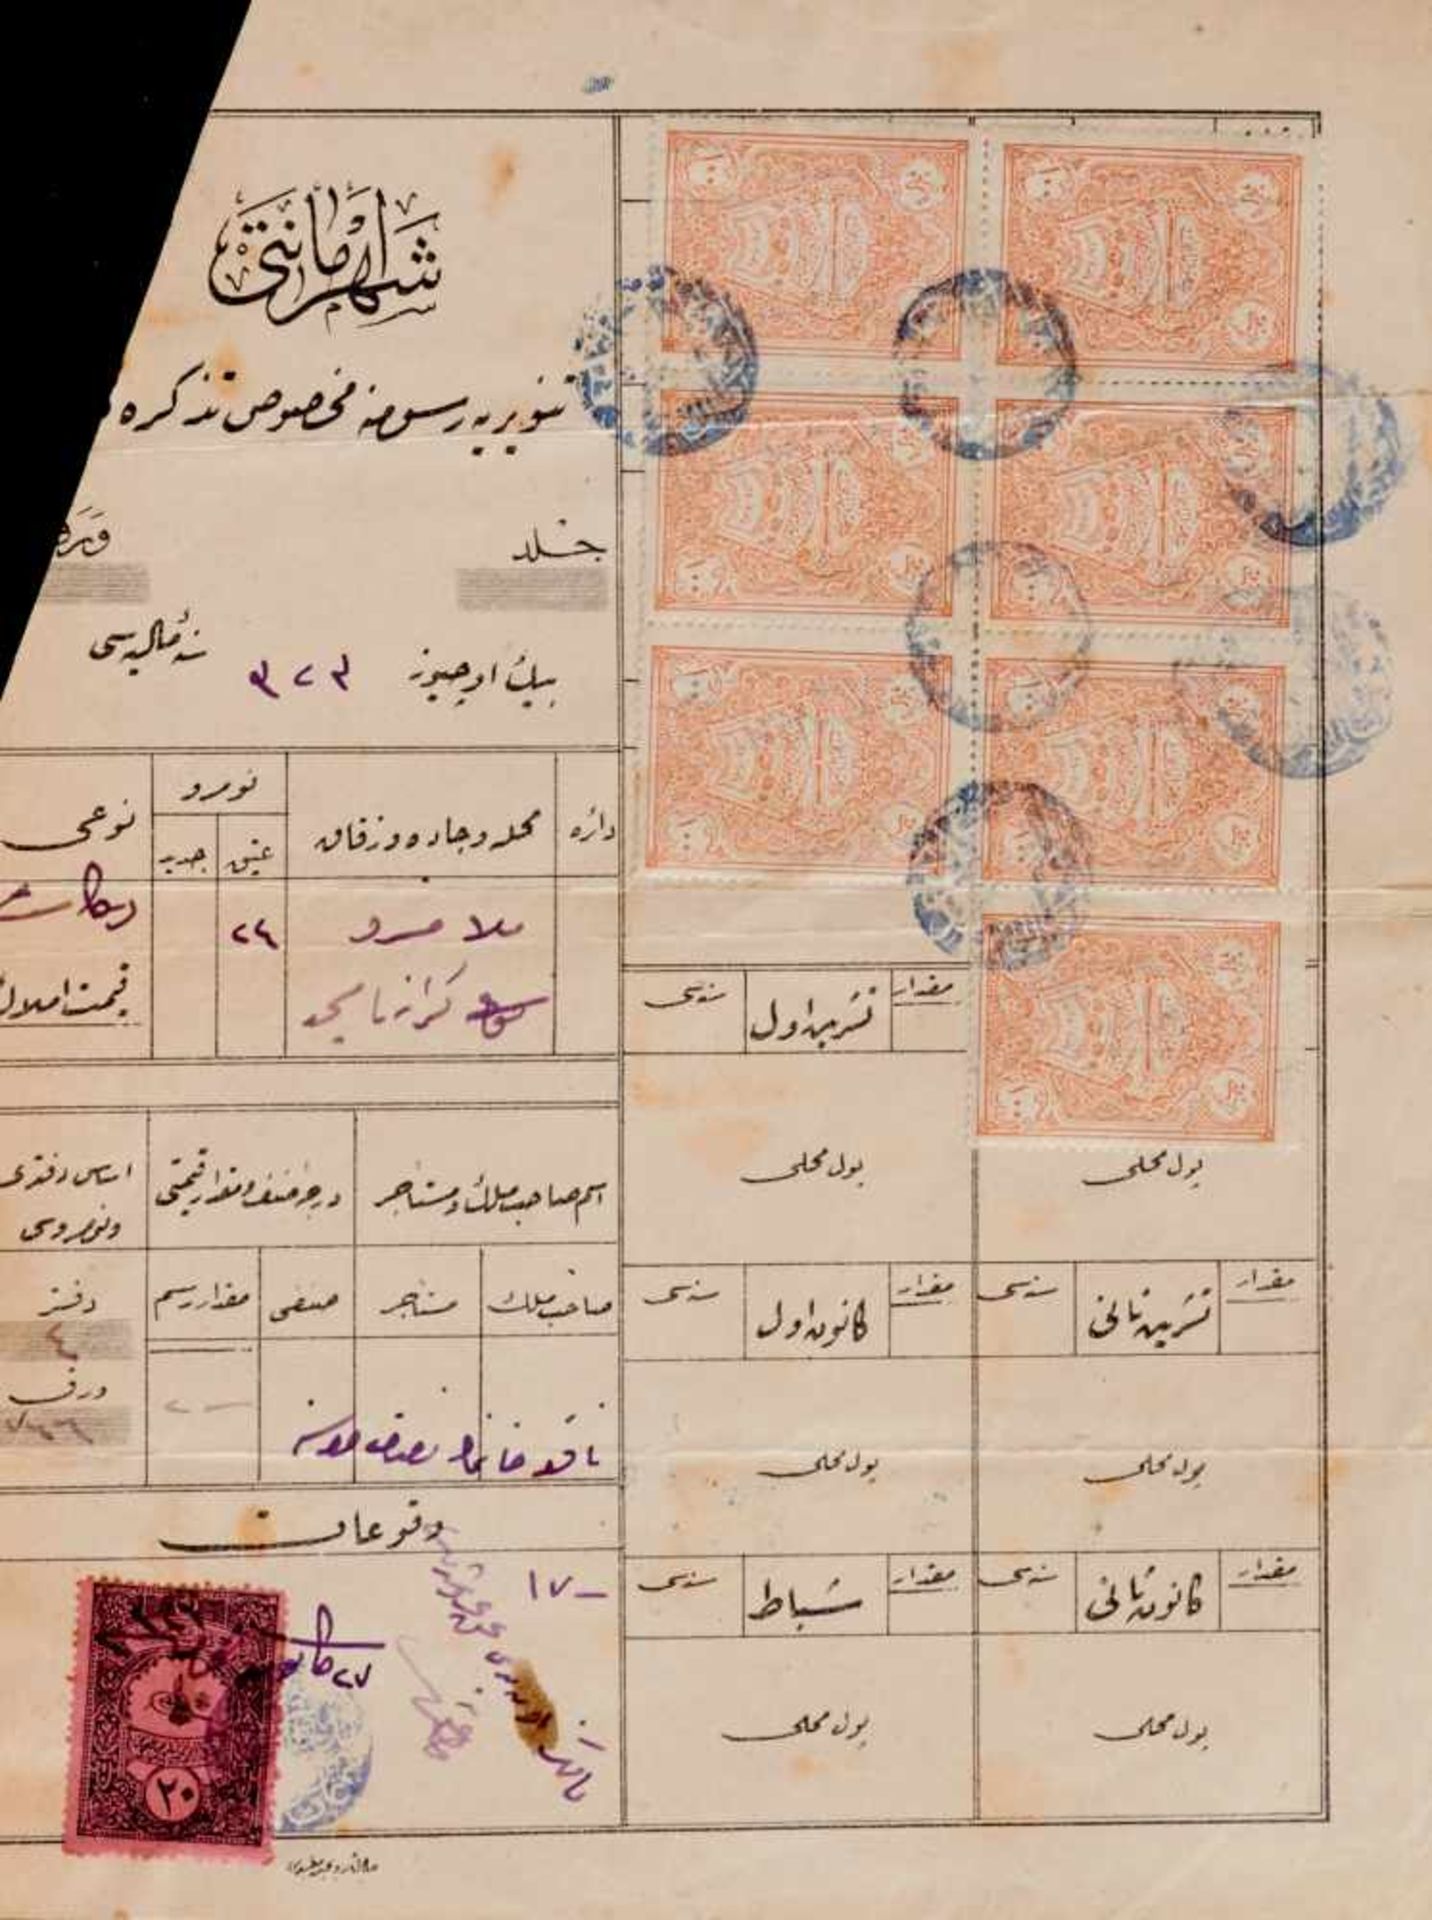 Osmanisches Reich Sammlung - Ca. 70 türkische Dokumente und Briefe, meistgedruckte Formulare hs. - Bild 2 aus 7